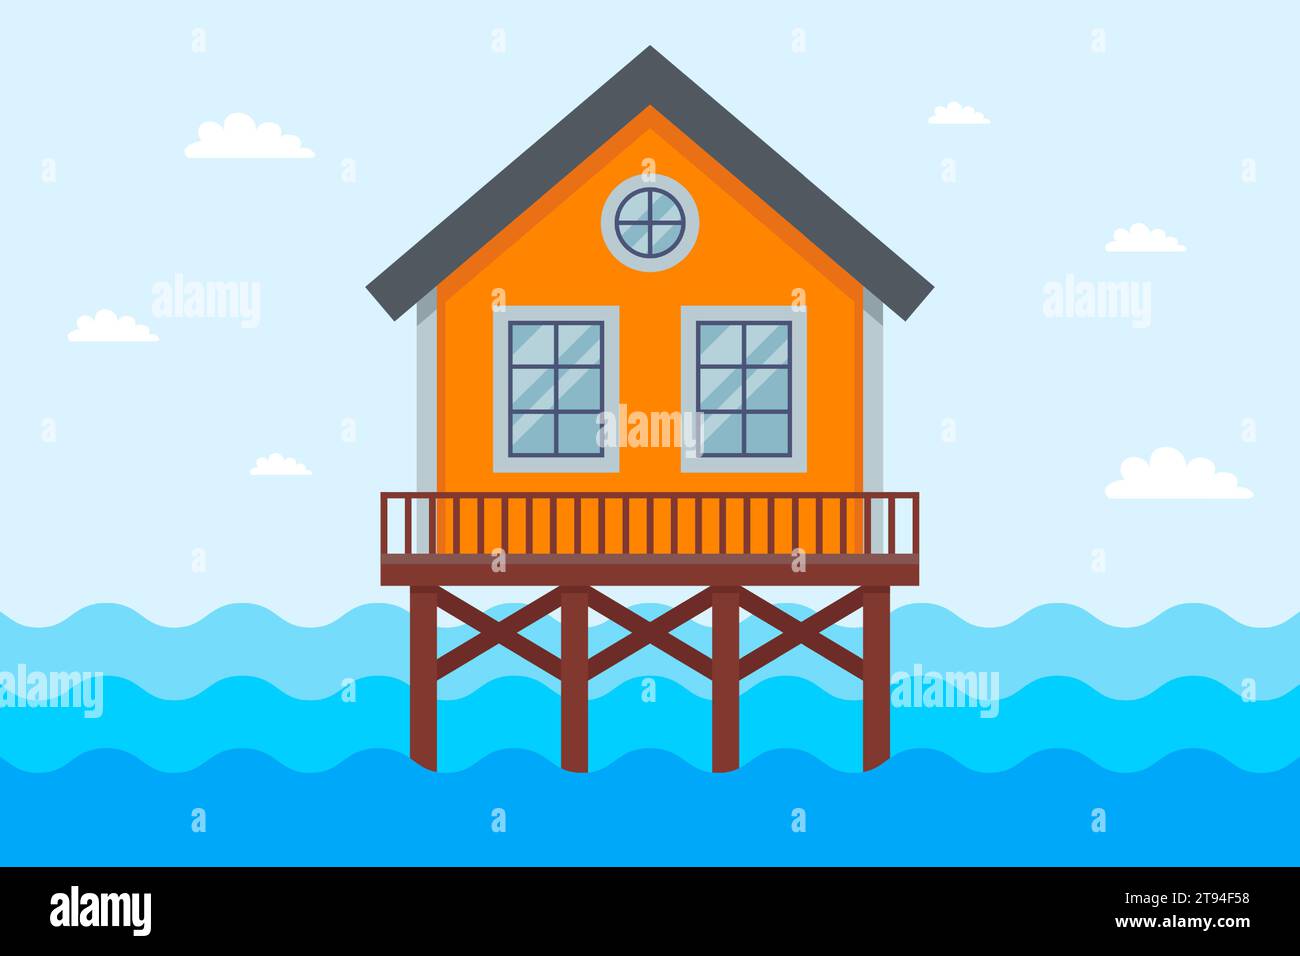 Haus auf Stelzen im Meer. Überschwemmung mit Wasser. Illustration des flachen Vektors. Stock Vektor